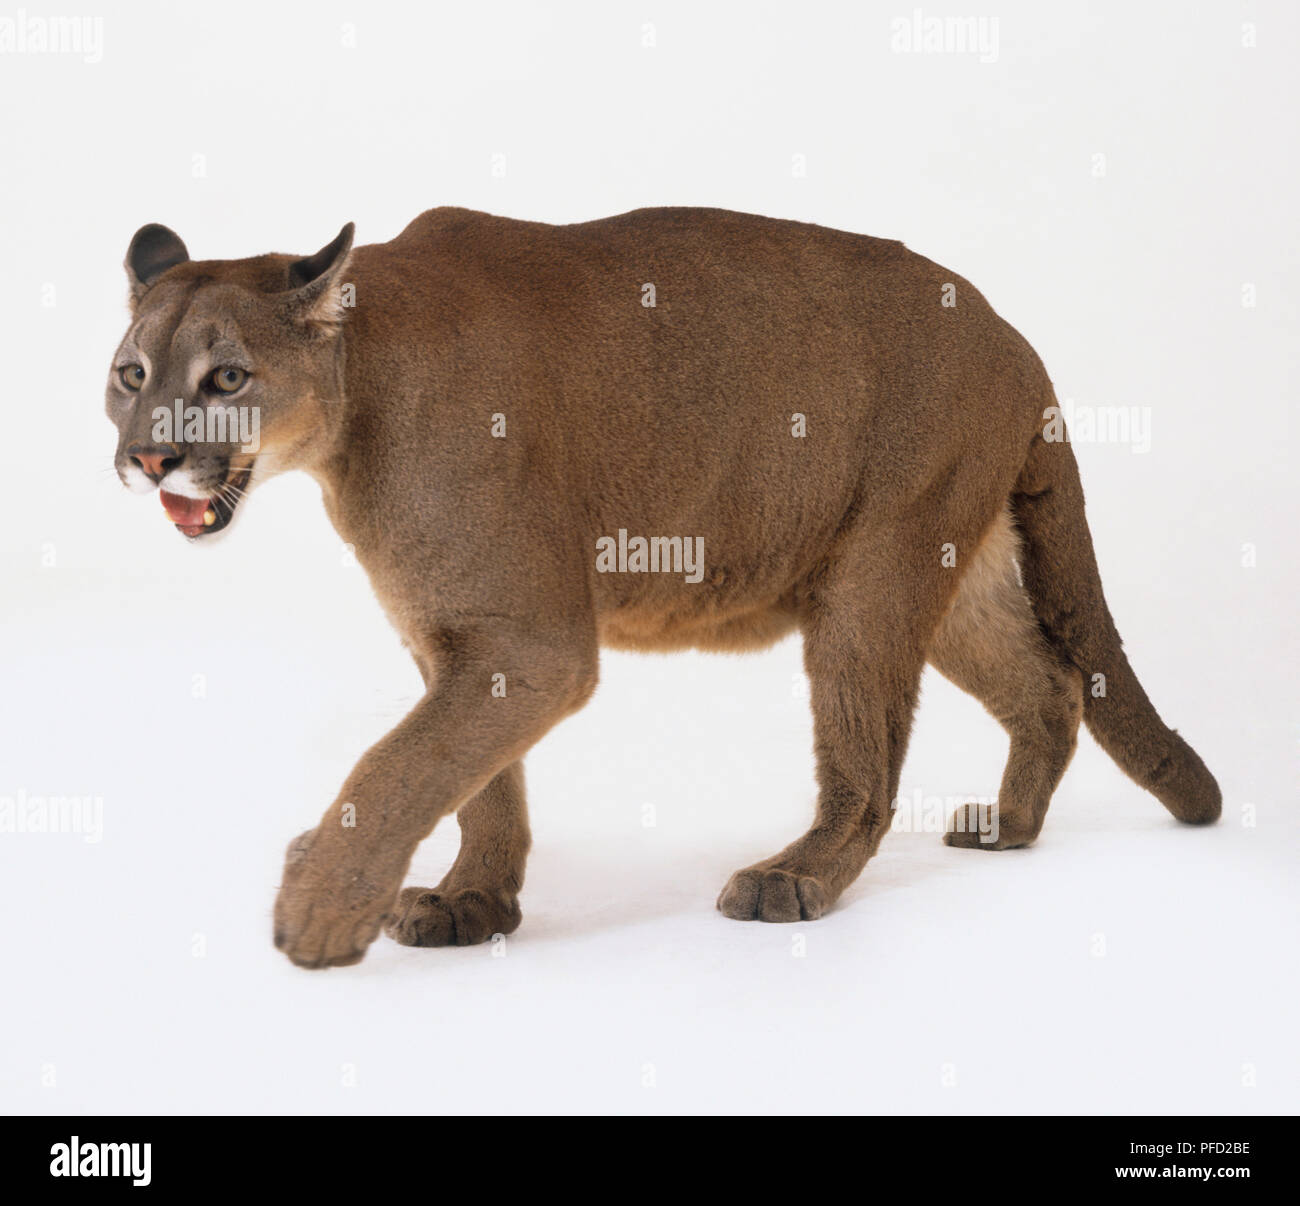 daar ben ik het mee eens Groenland Ik heb een contract gemaakt Puma (Felis concolor) walking, side view Stock Photo - Alamy